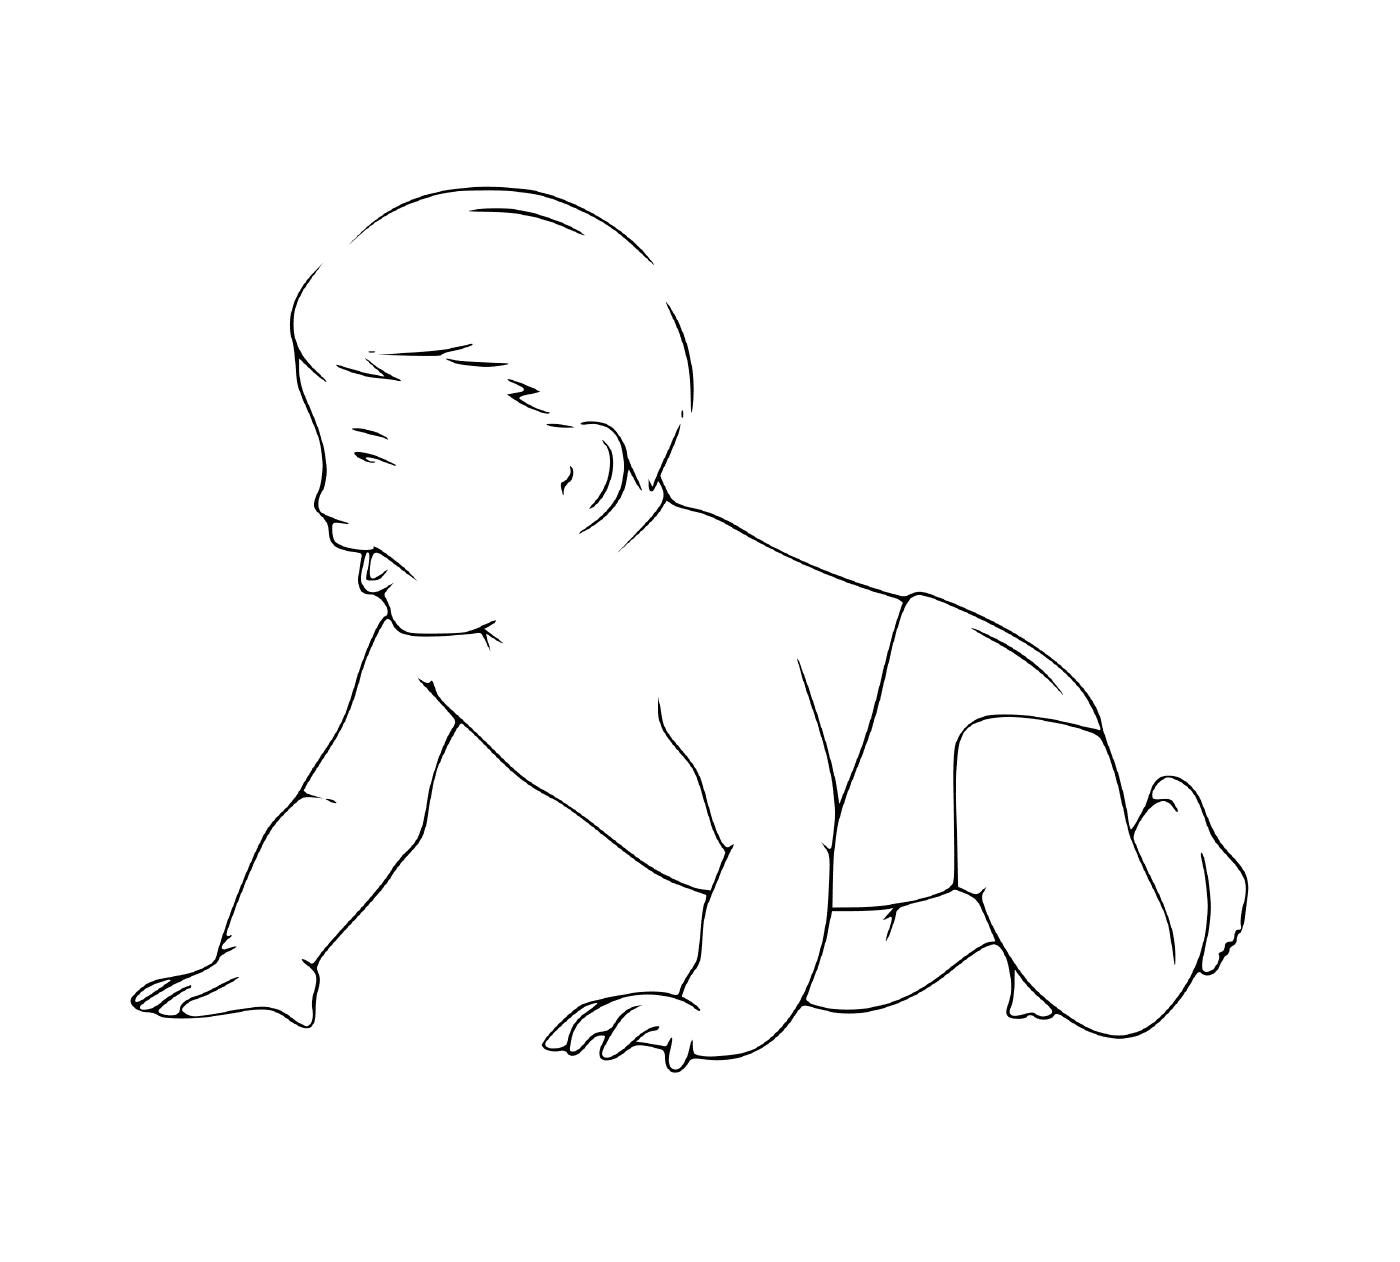  Un bambino realistico di un anno seduto sul pavimento 